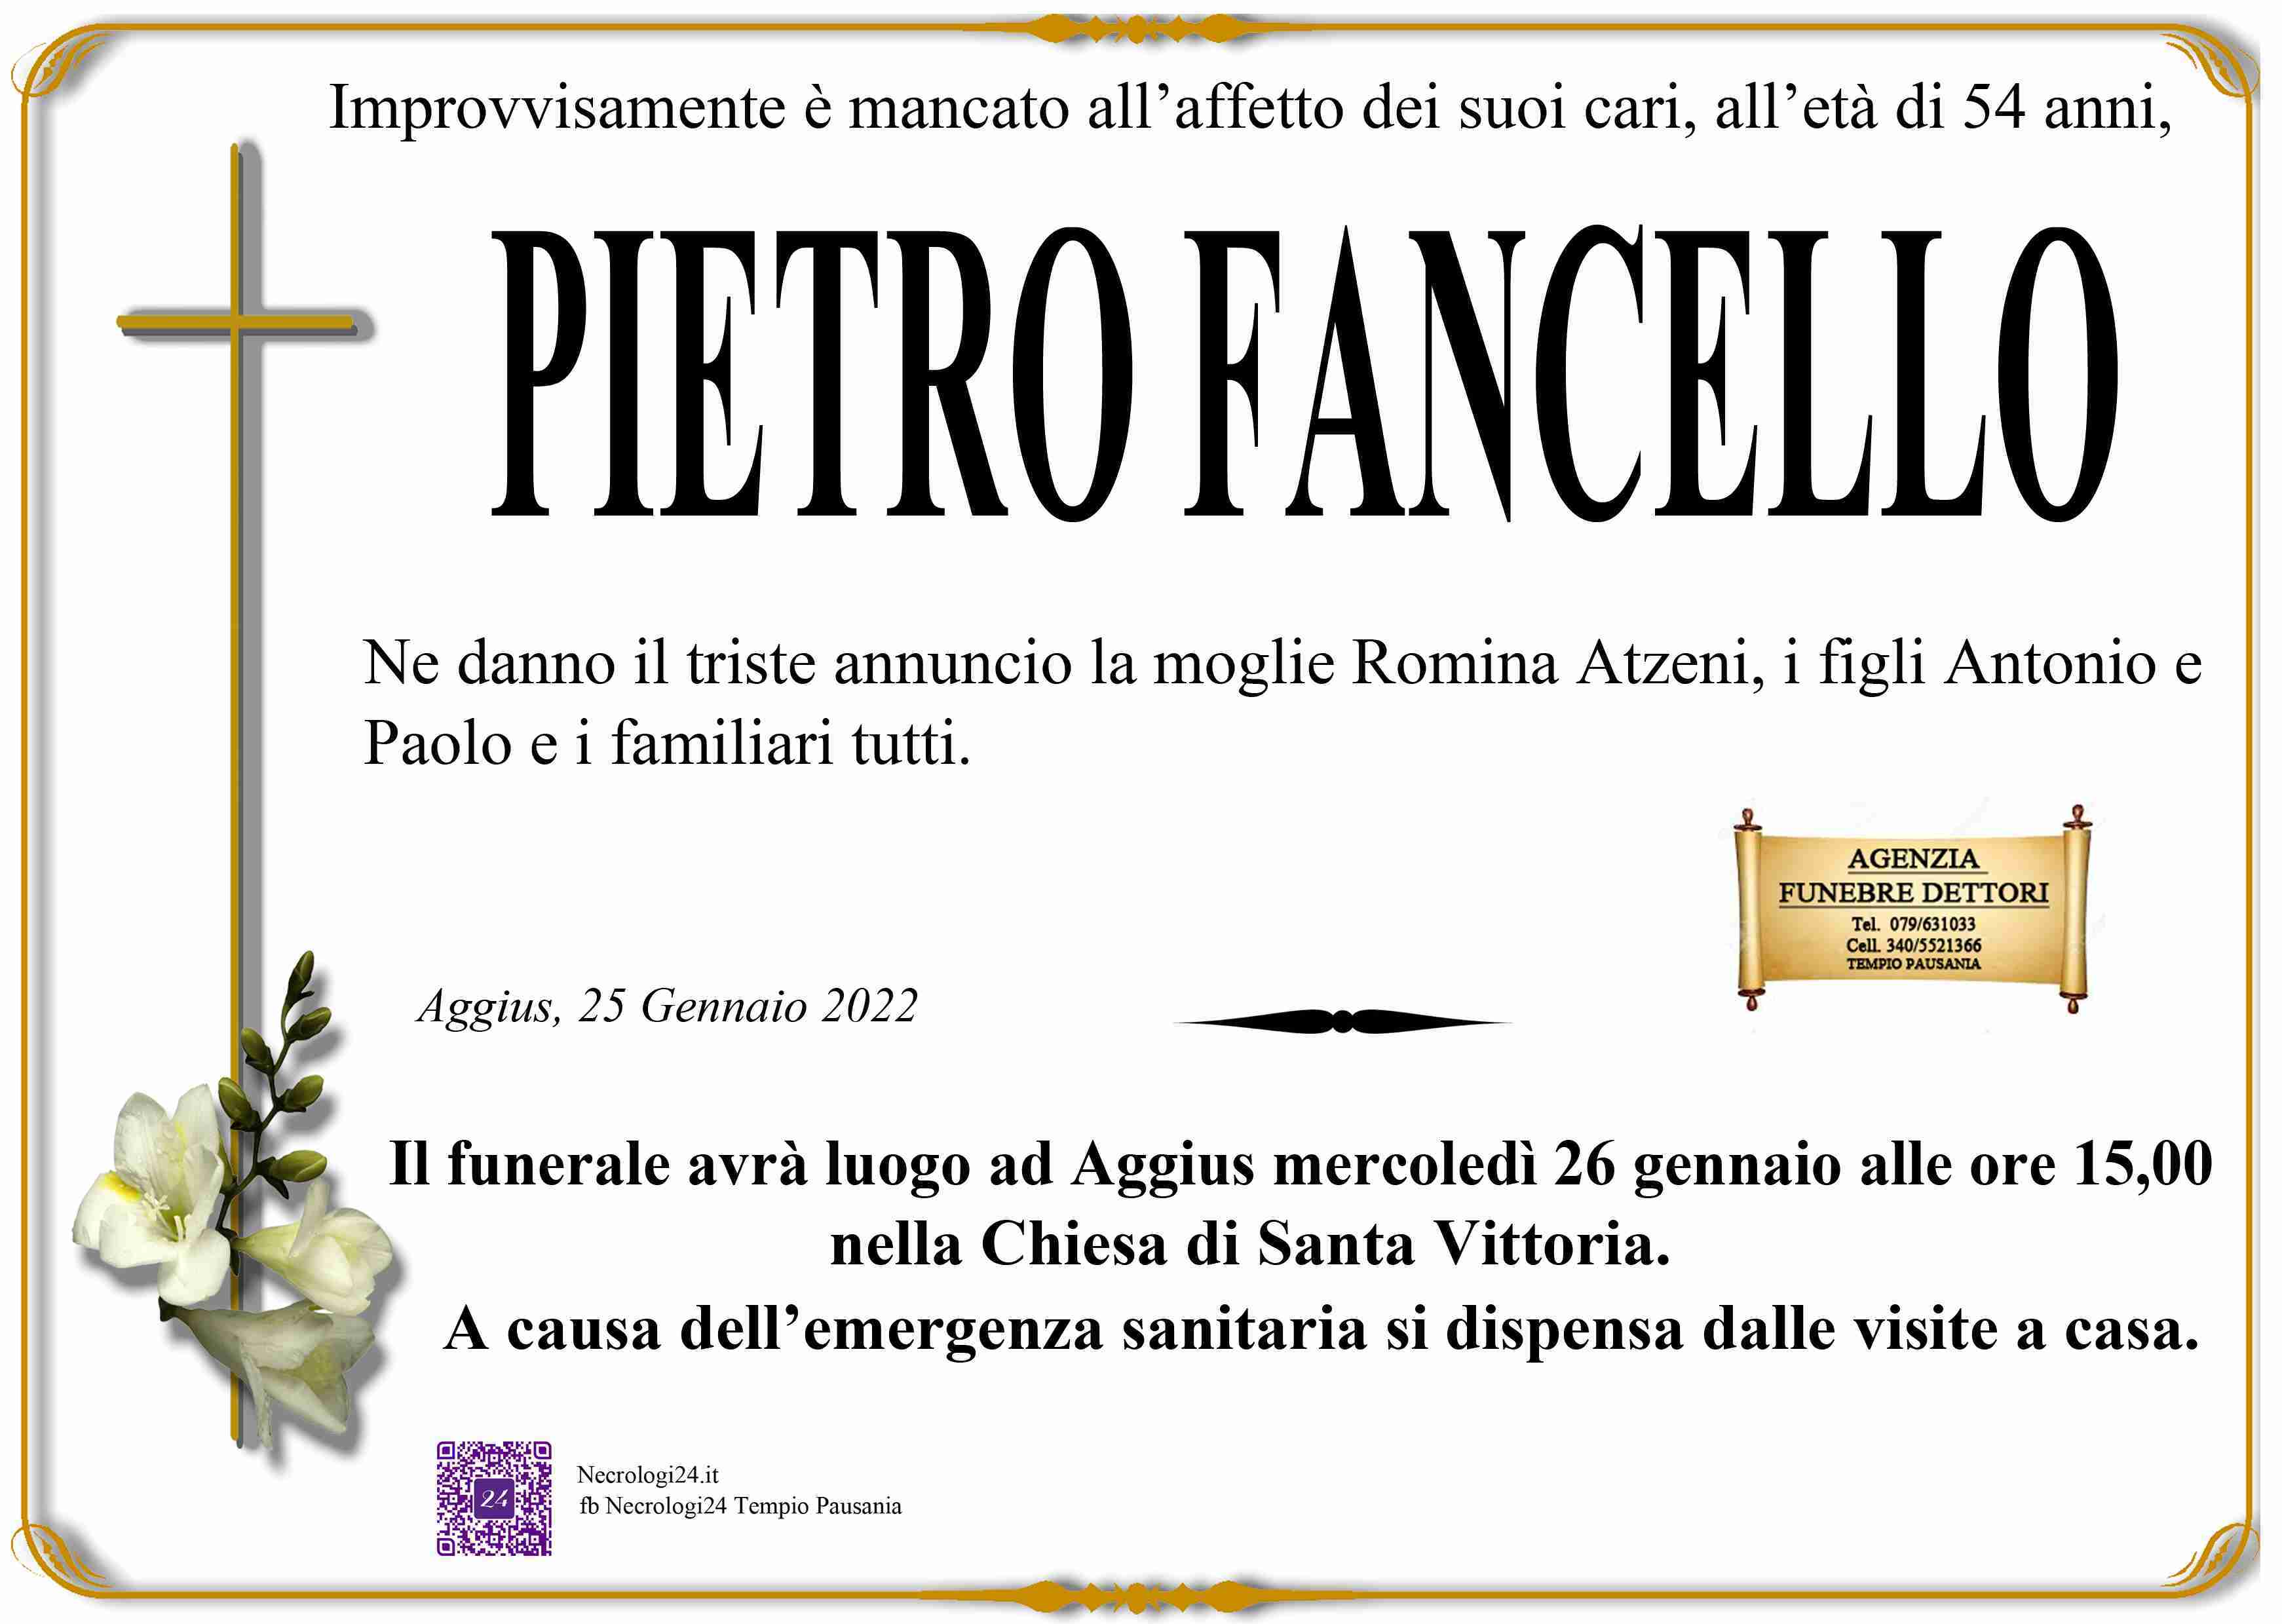 Pietro Fancello